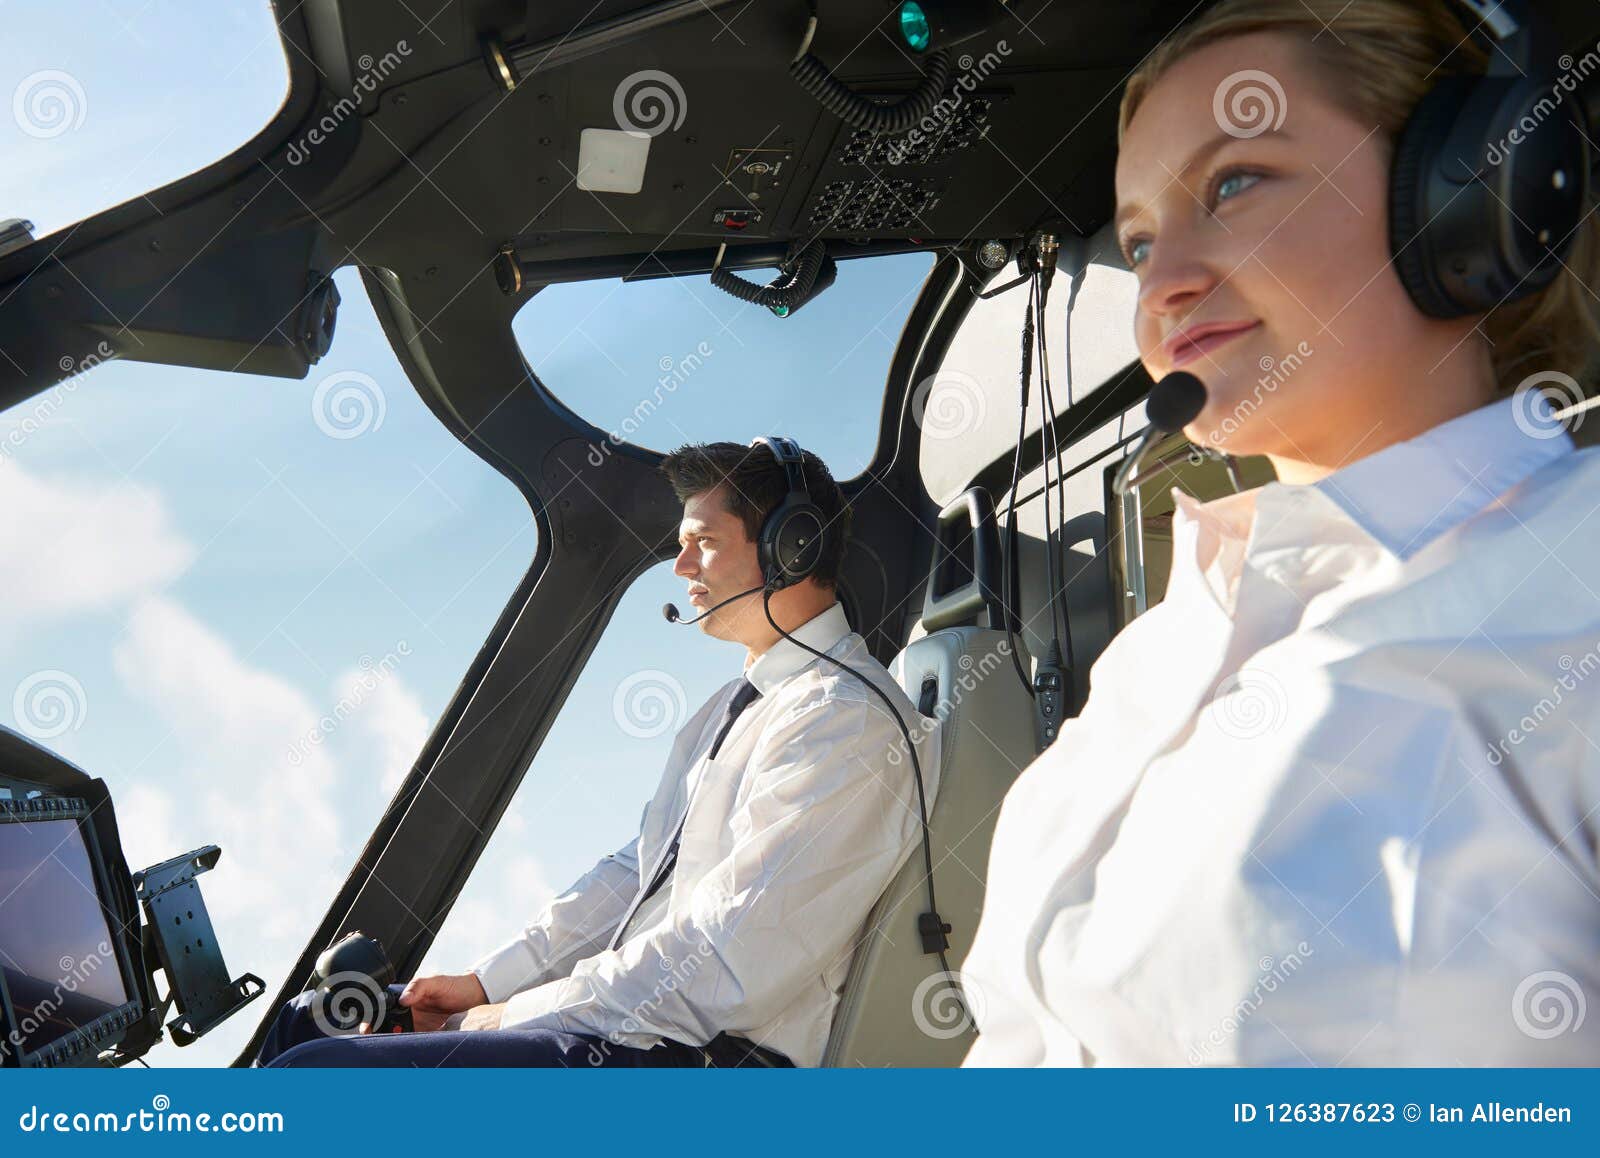 Pilota With Co Pilot in cabina di pilotaggio dell'elicottero